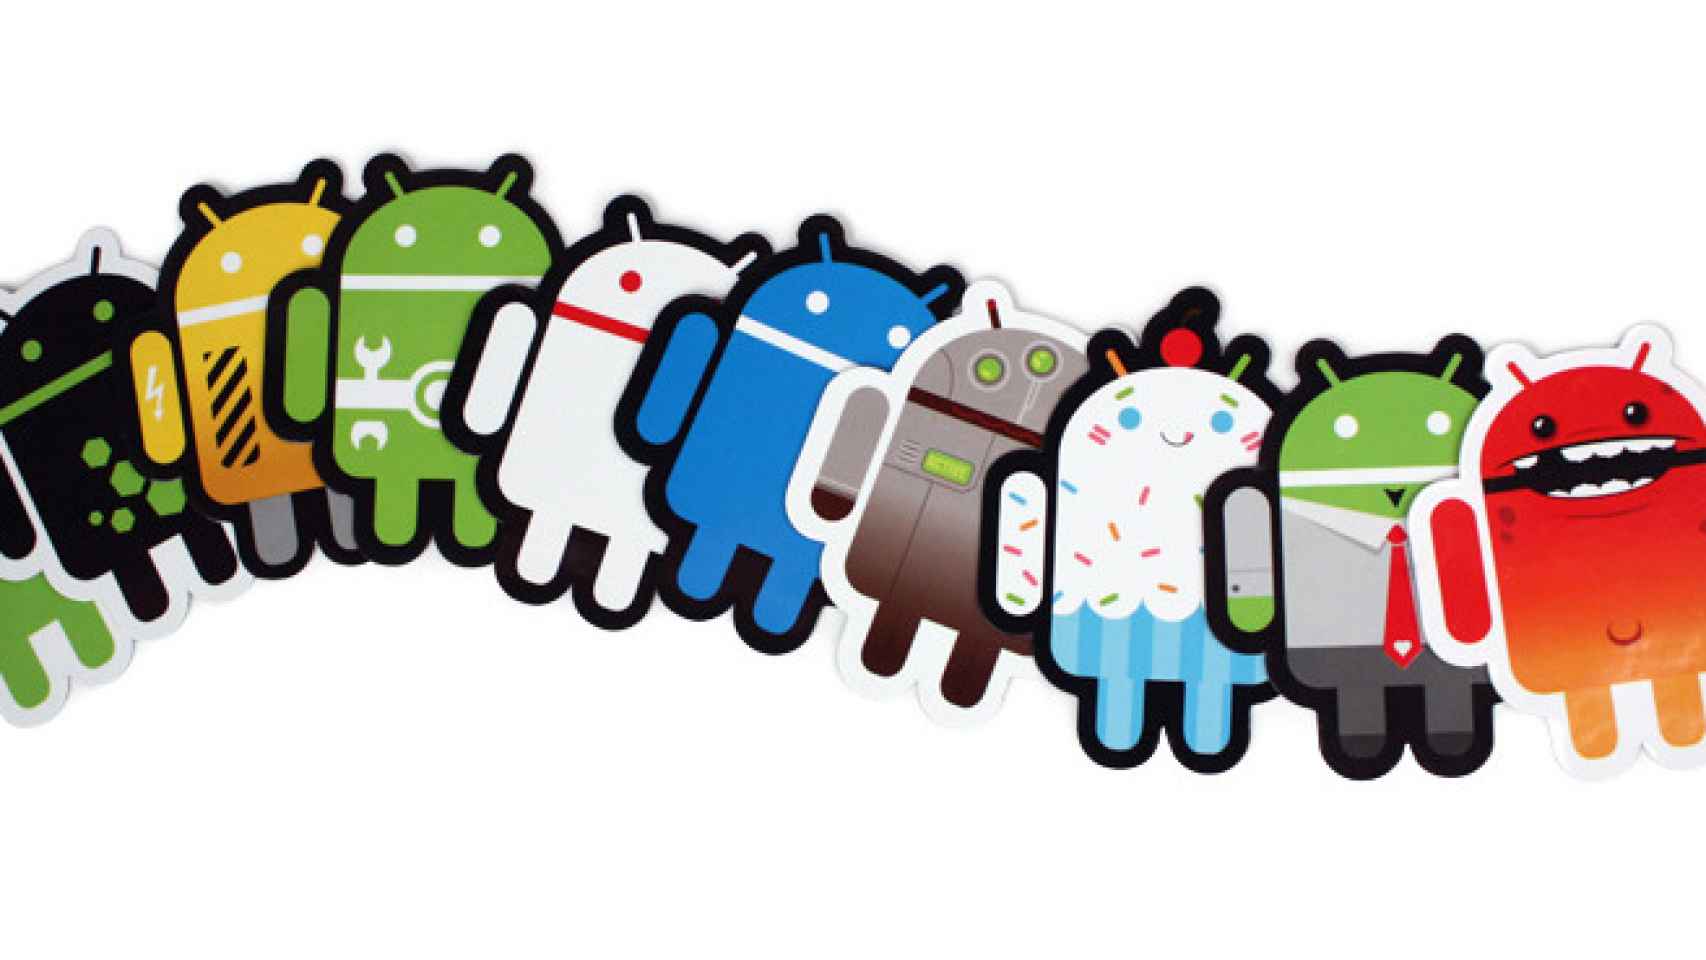 Android líder en plataforma móvil, Apple líder como fabricante según reportes